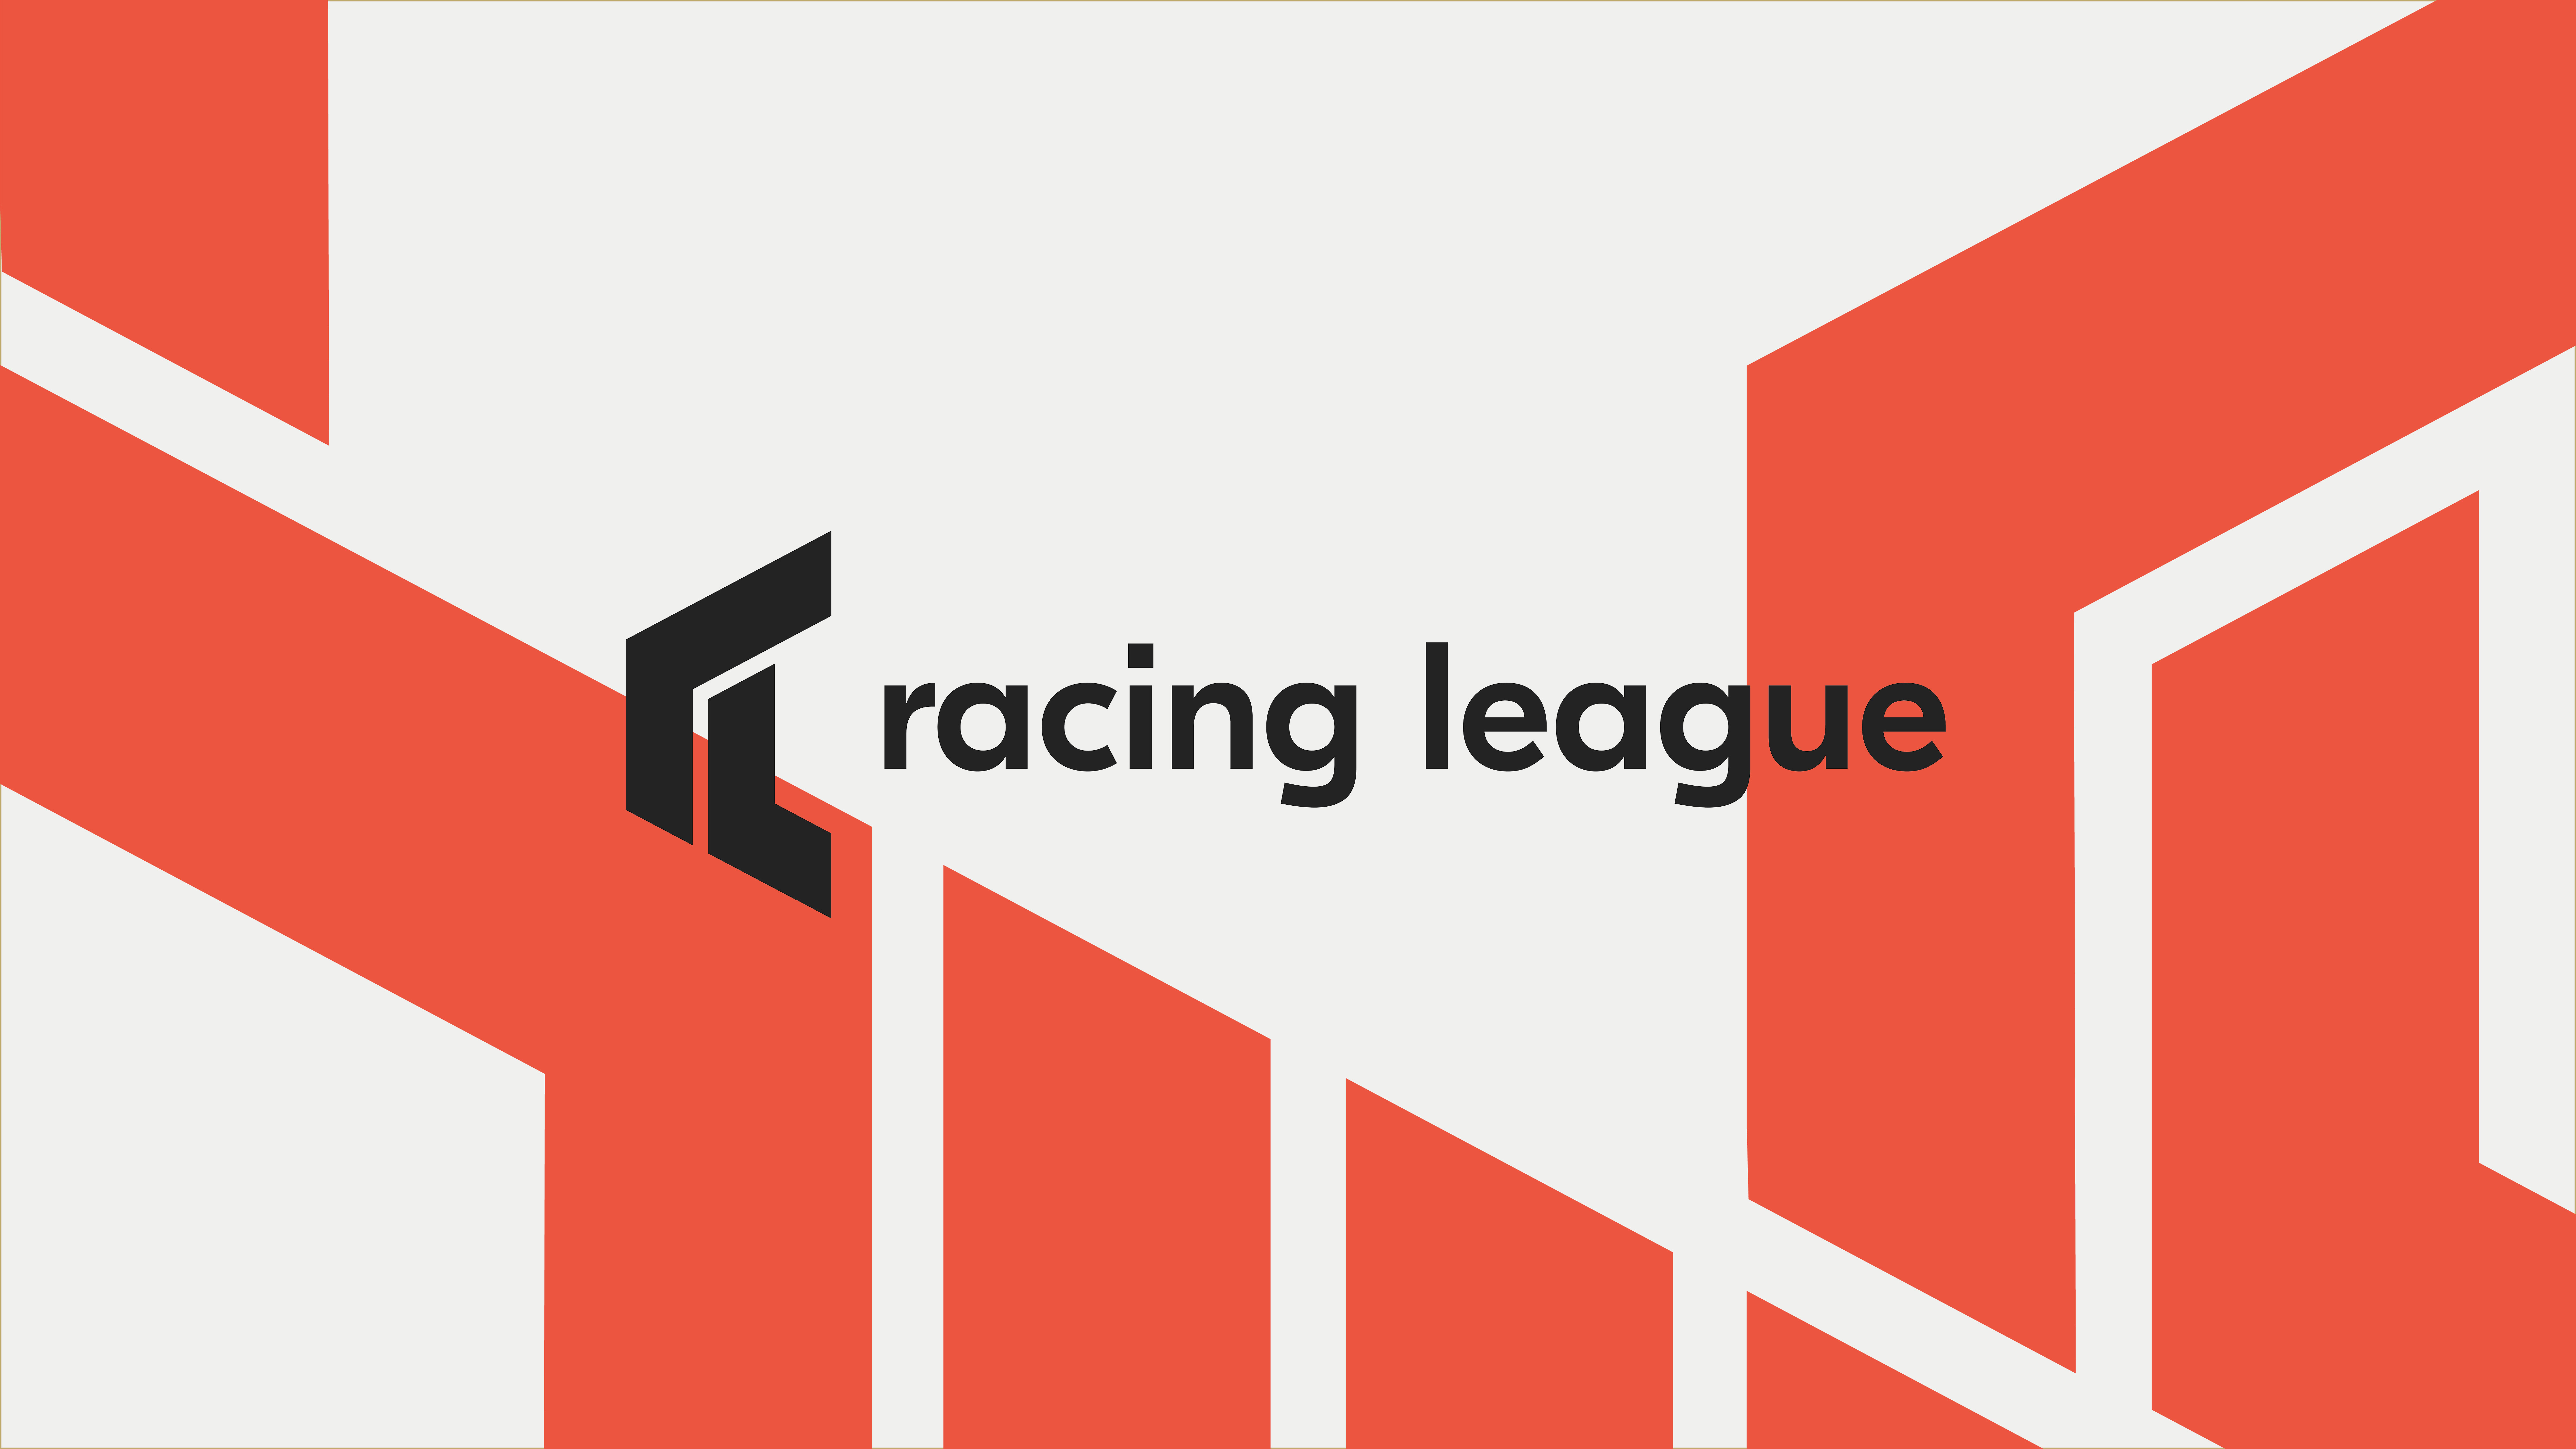 Racing League postponed until July 2021